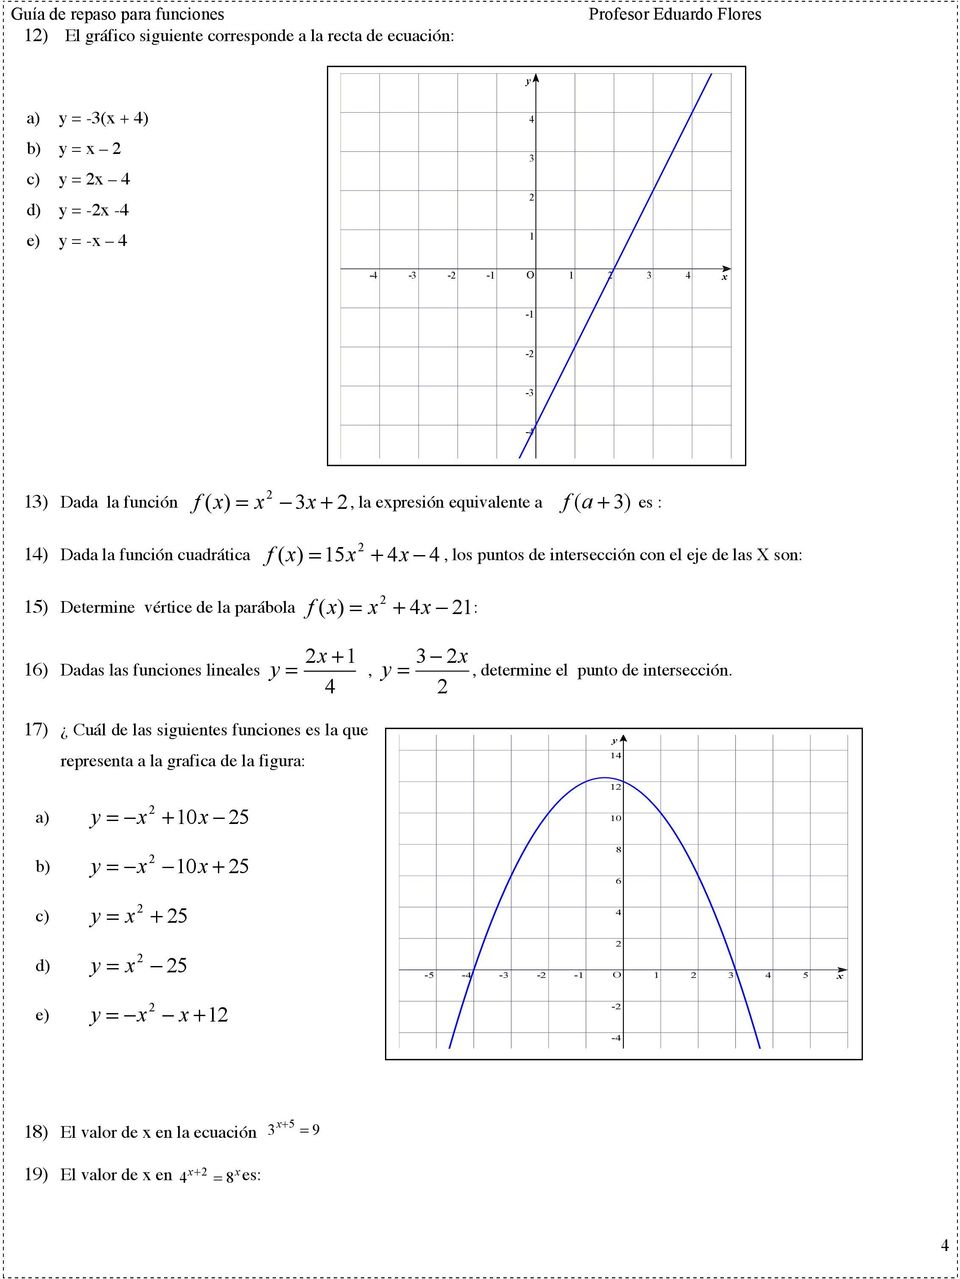 + x : -5 6) Dadas las funciones lineales + = x y, y 3 x =, determine el punto de intersección.